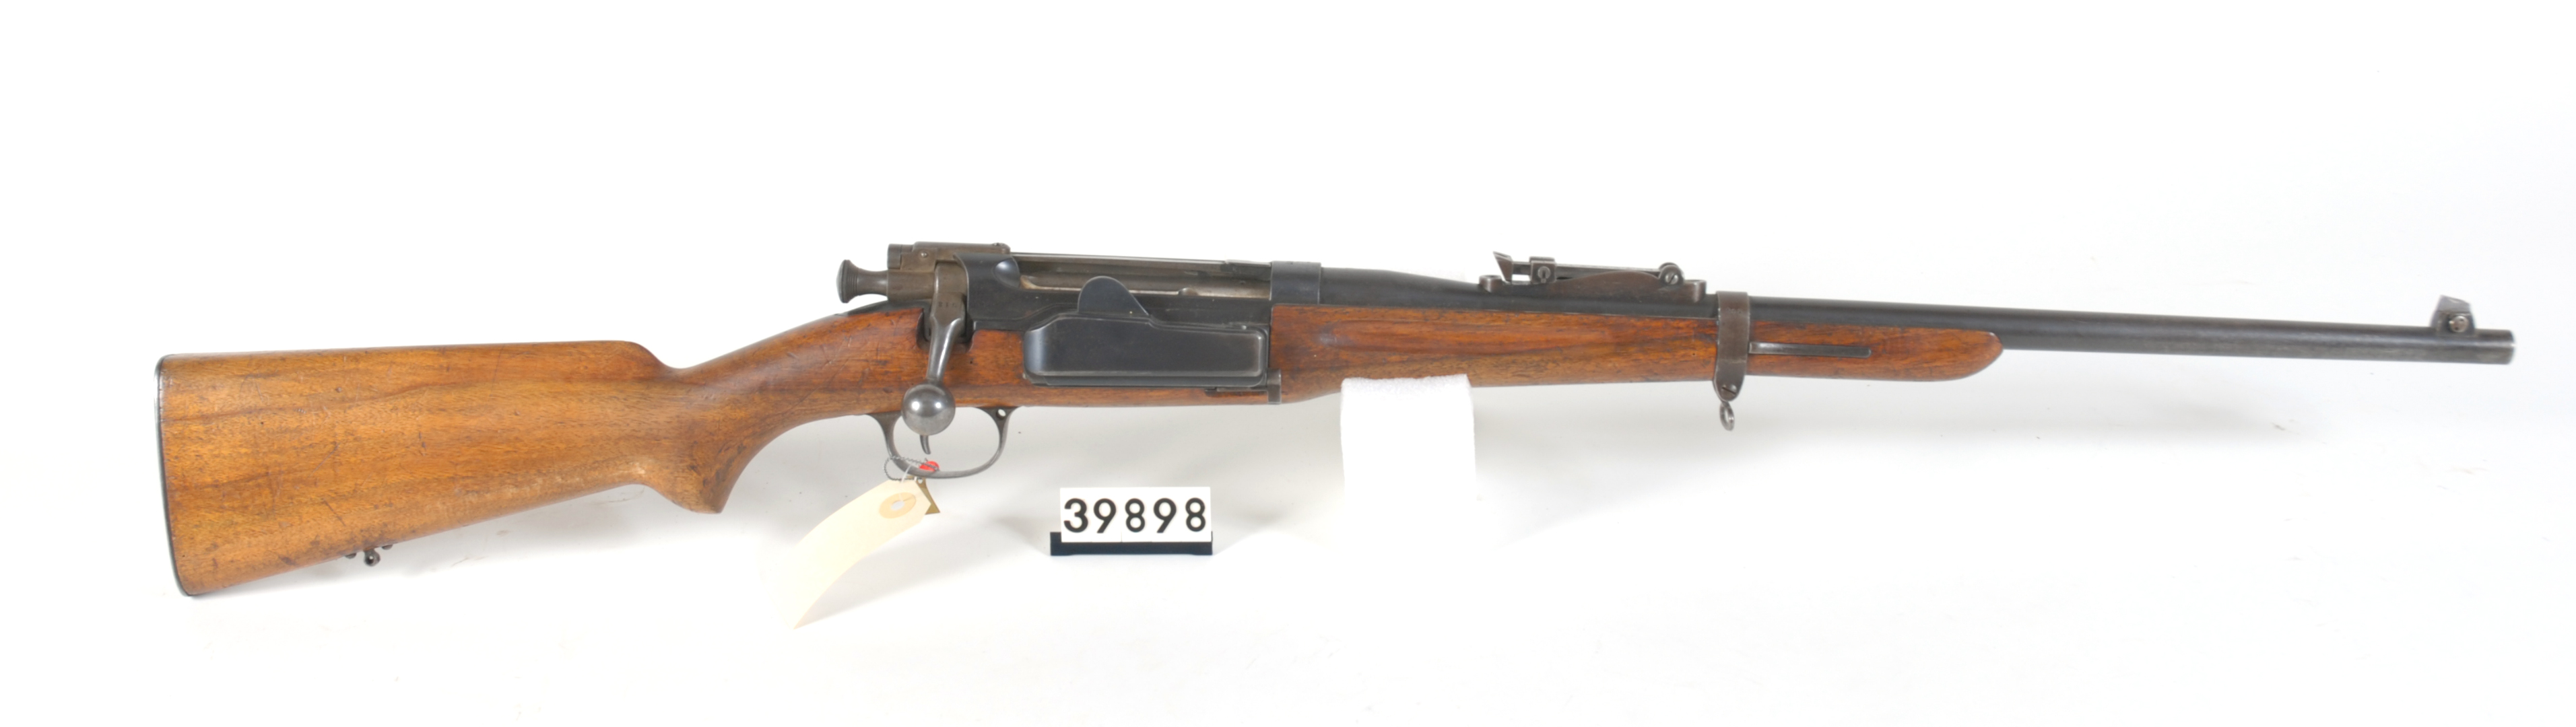 ./guns/rifle/bilder/Rifle-Kongsberg-Krag-M1906-FMU.039898.jpg